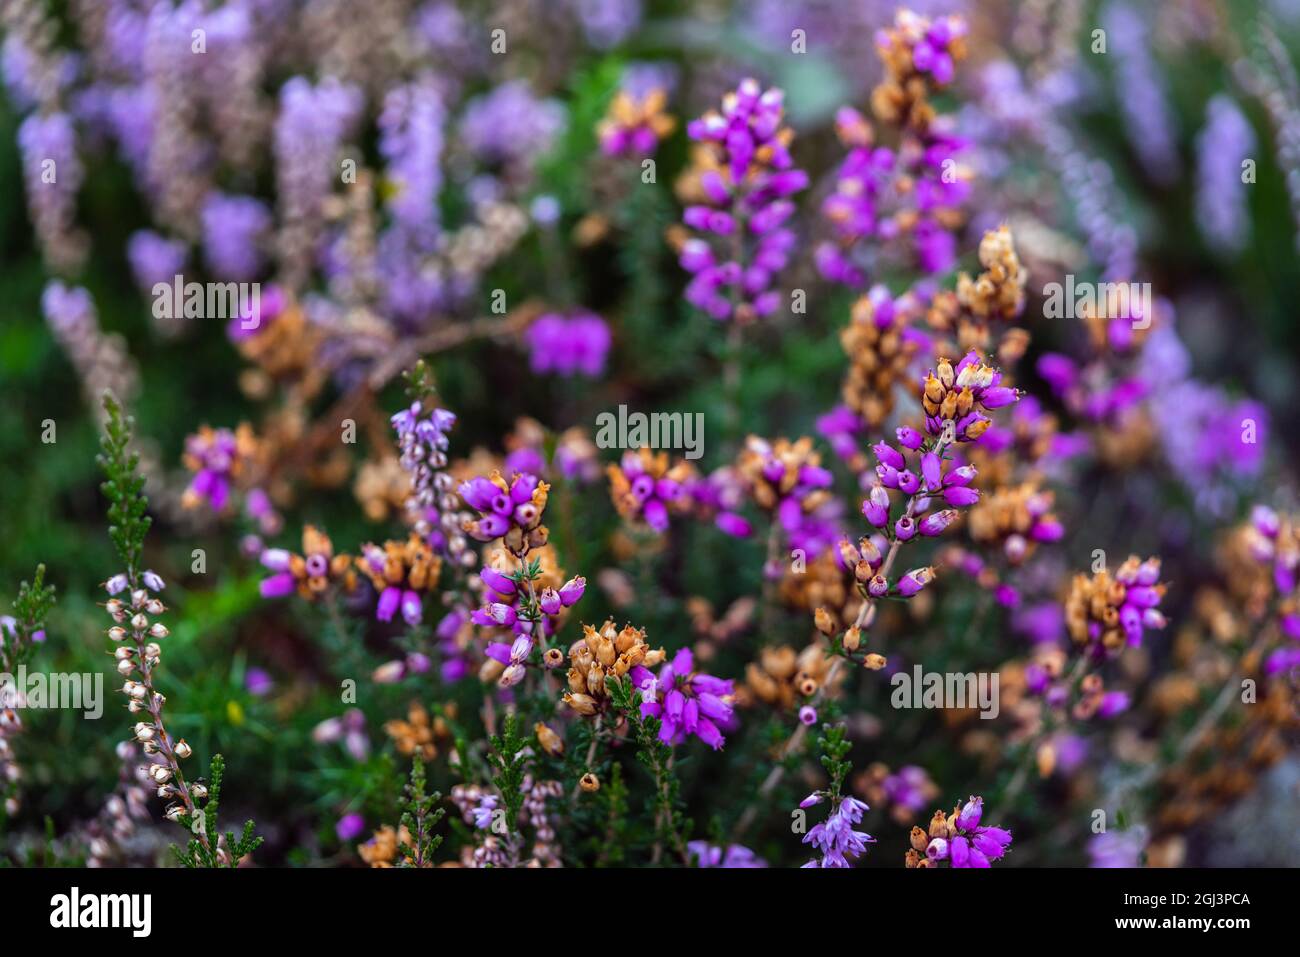 Coloratissime piante viola / rosa campanaria erica (erica cinerea)che iniziano a appassire durante la fine dell'estate nella New Forest, Inghilterra, Regno Unito Foto Stock